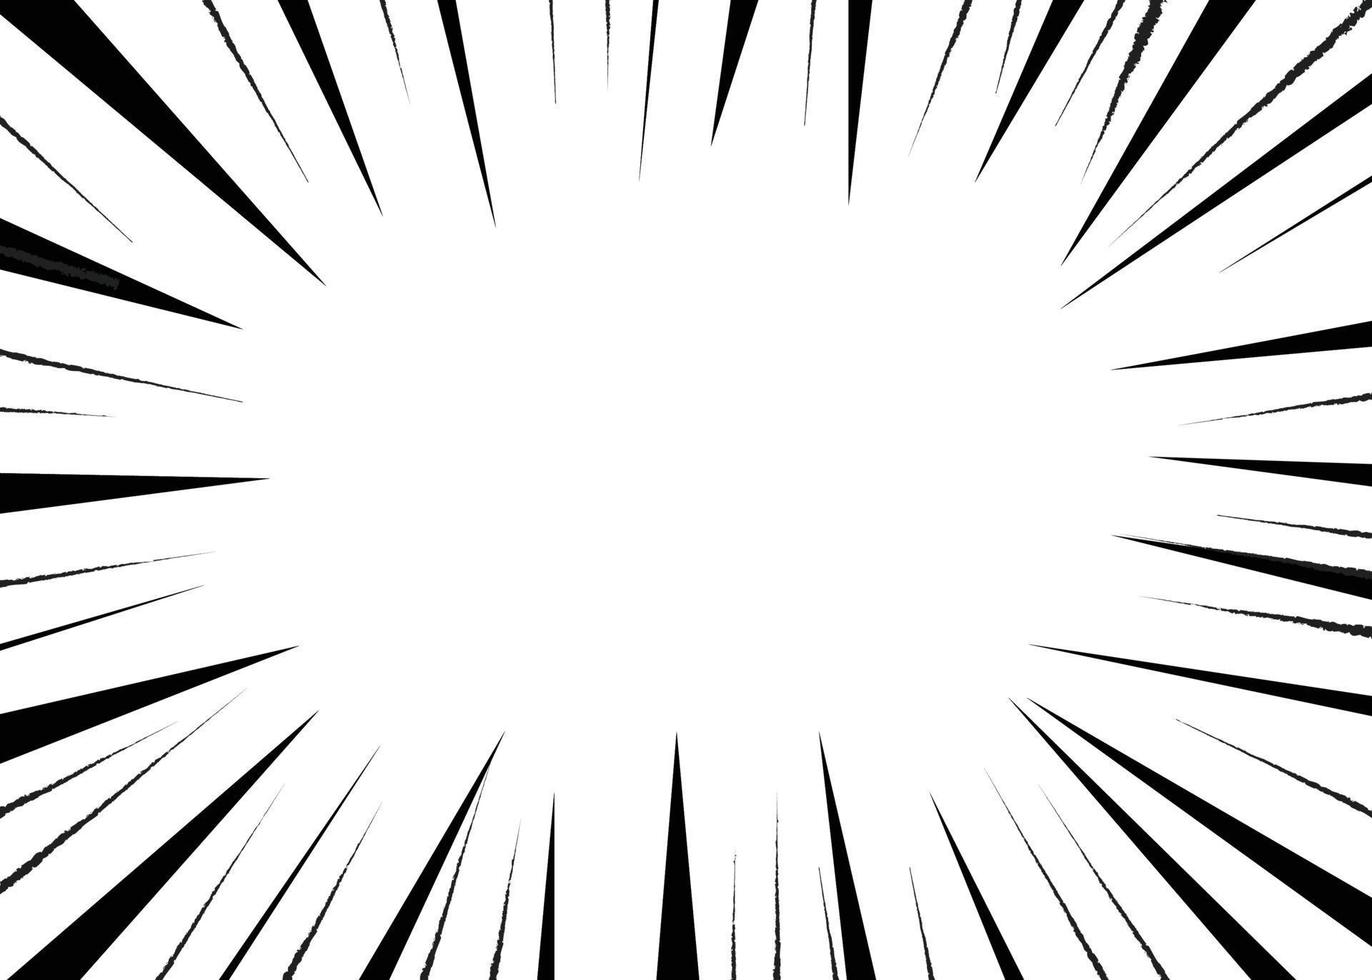 Comic sunburst illustration.Abstract cartoon pattern vector